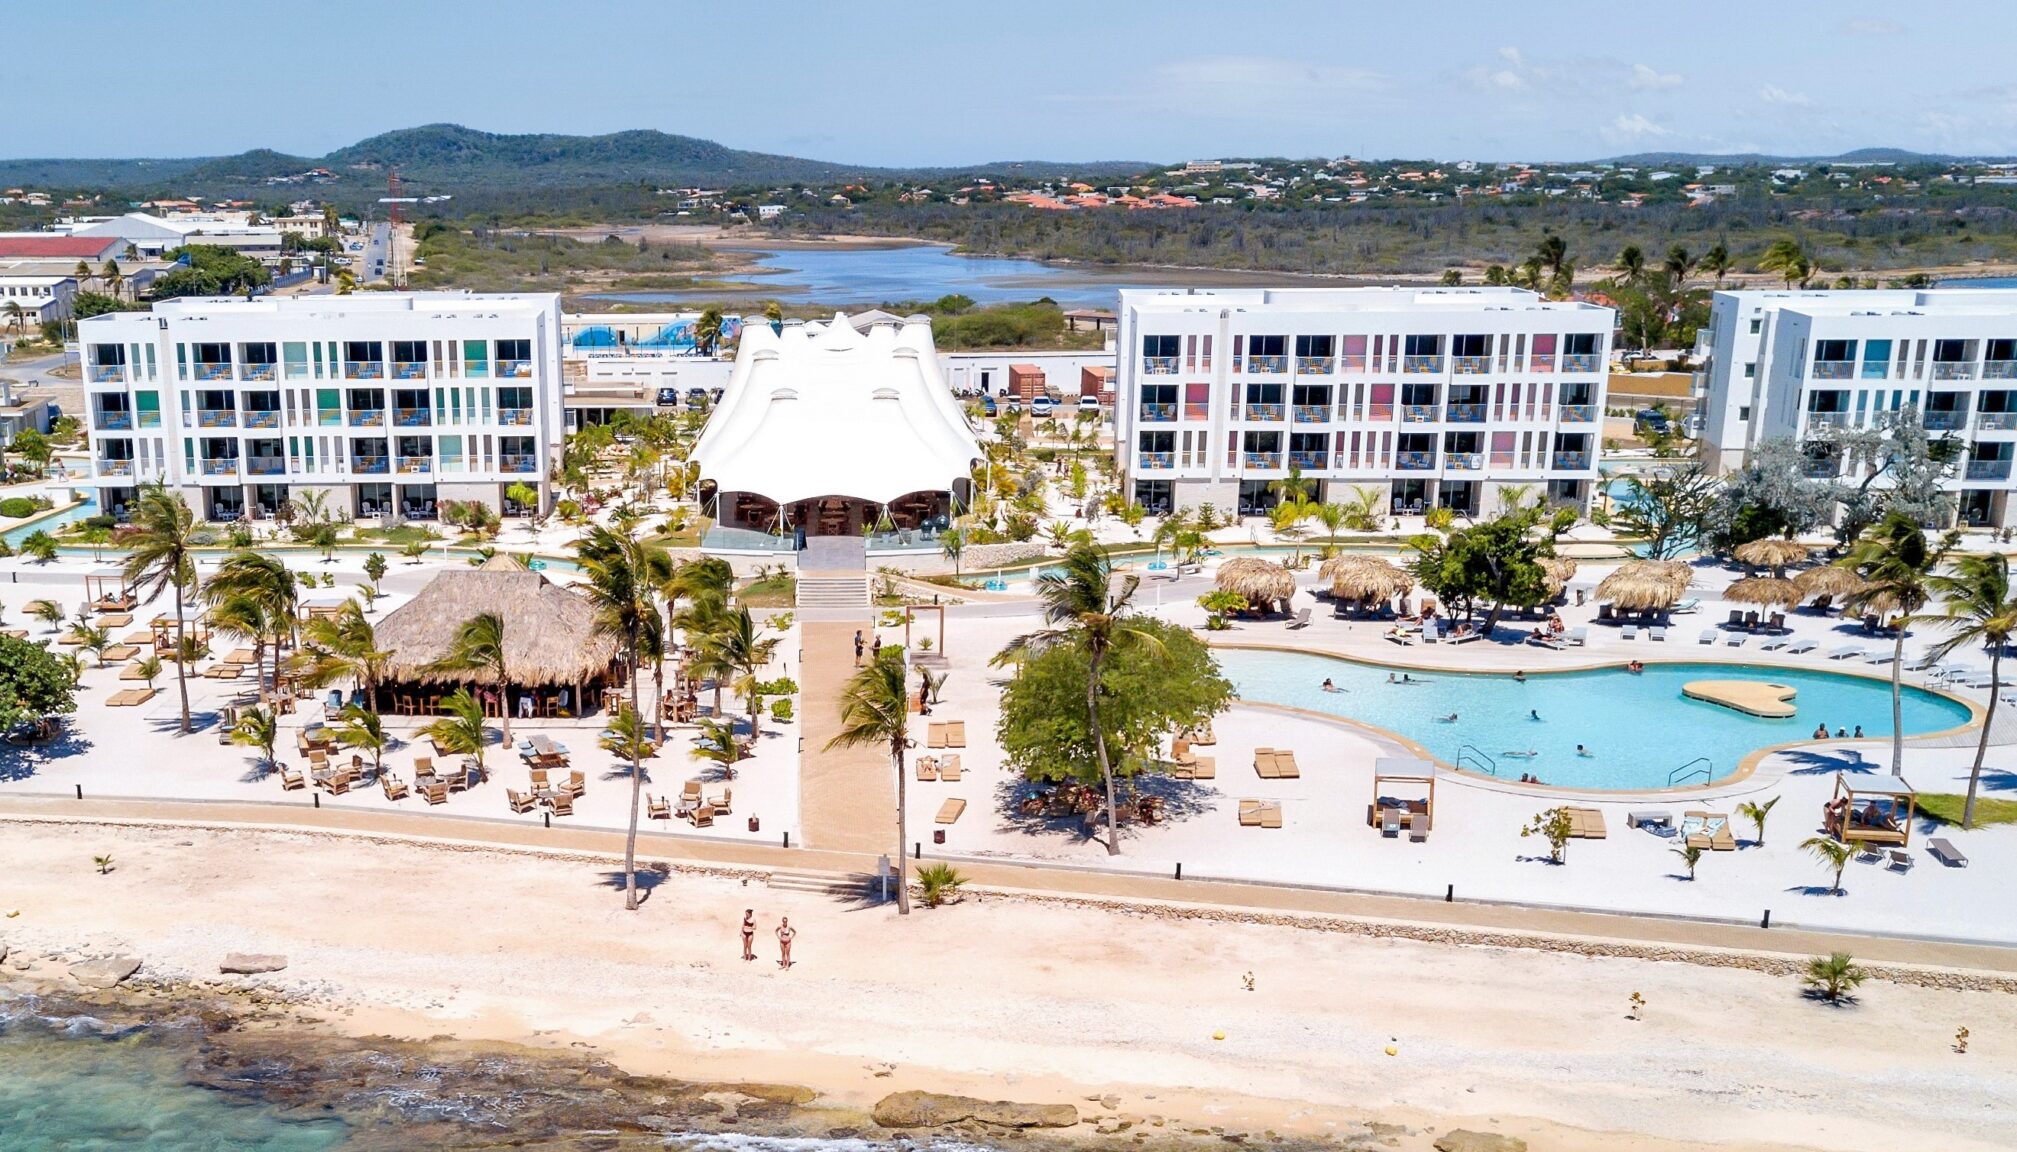 Chogogo Dive & Beach Resort: ook voor niet-duikers een heerlijk resort op Bonaire